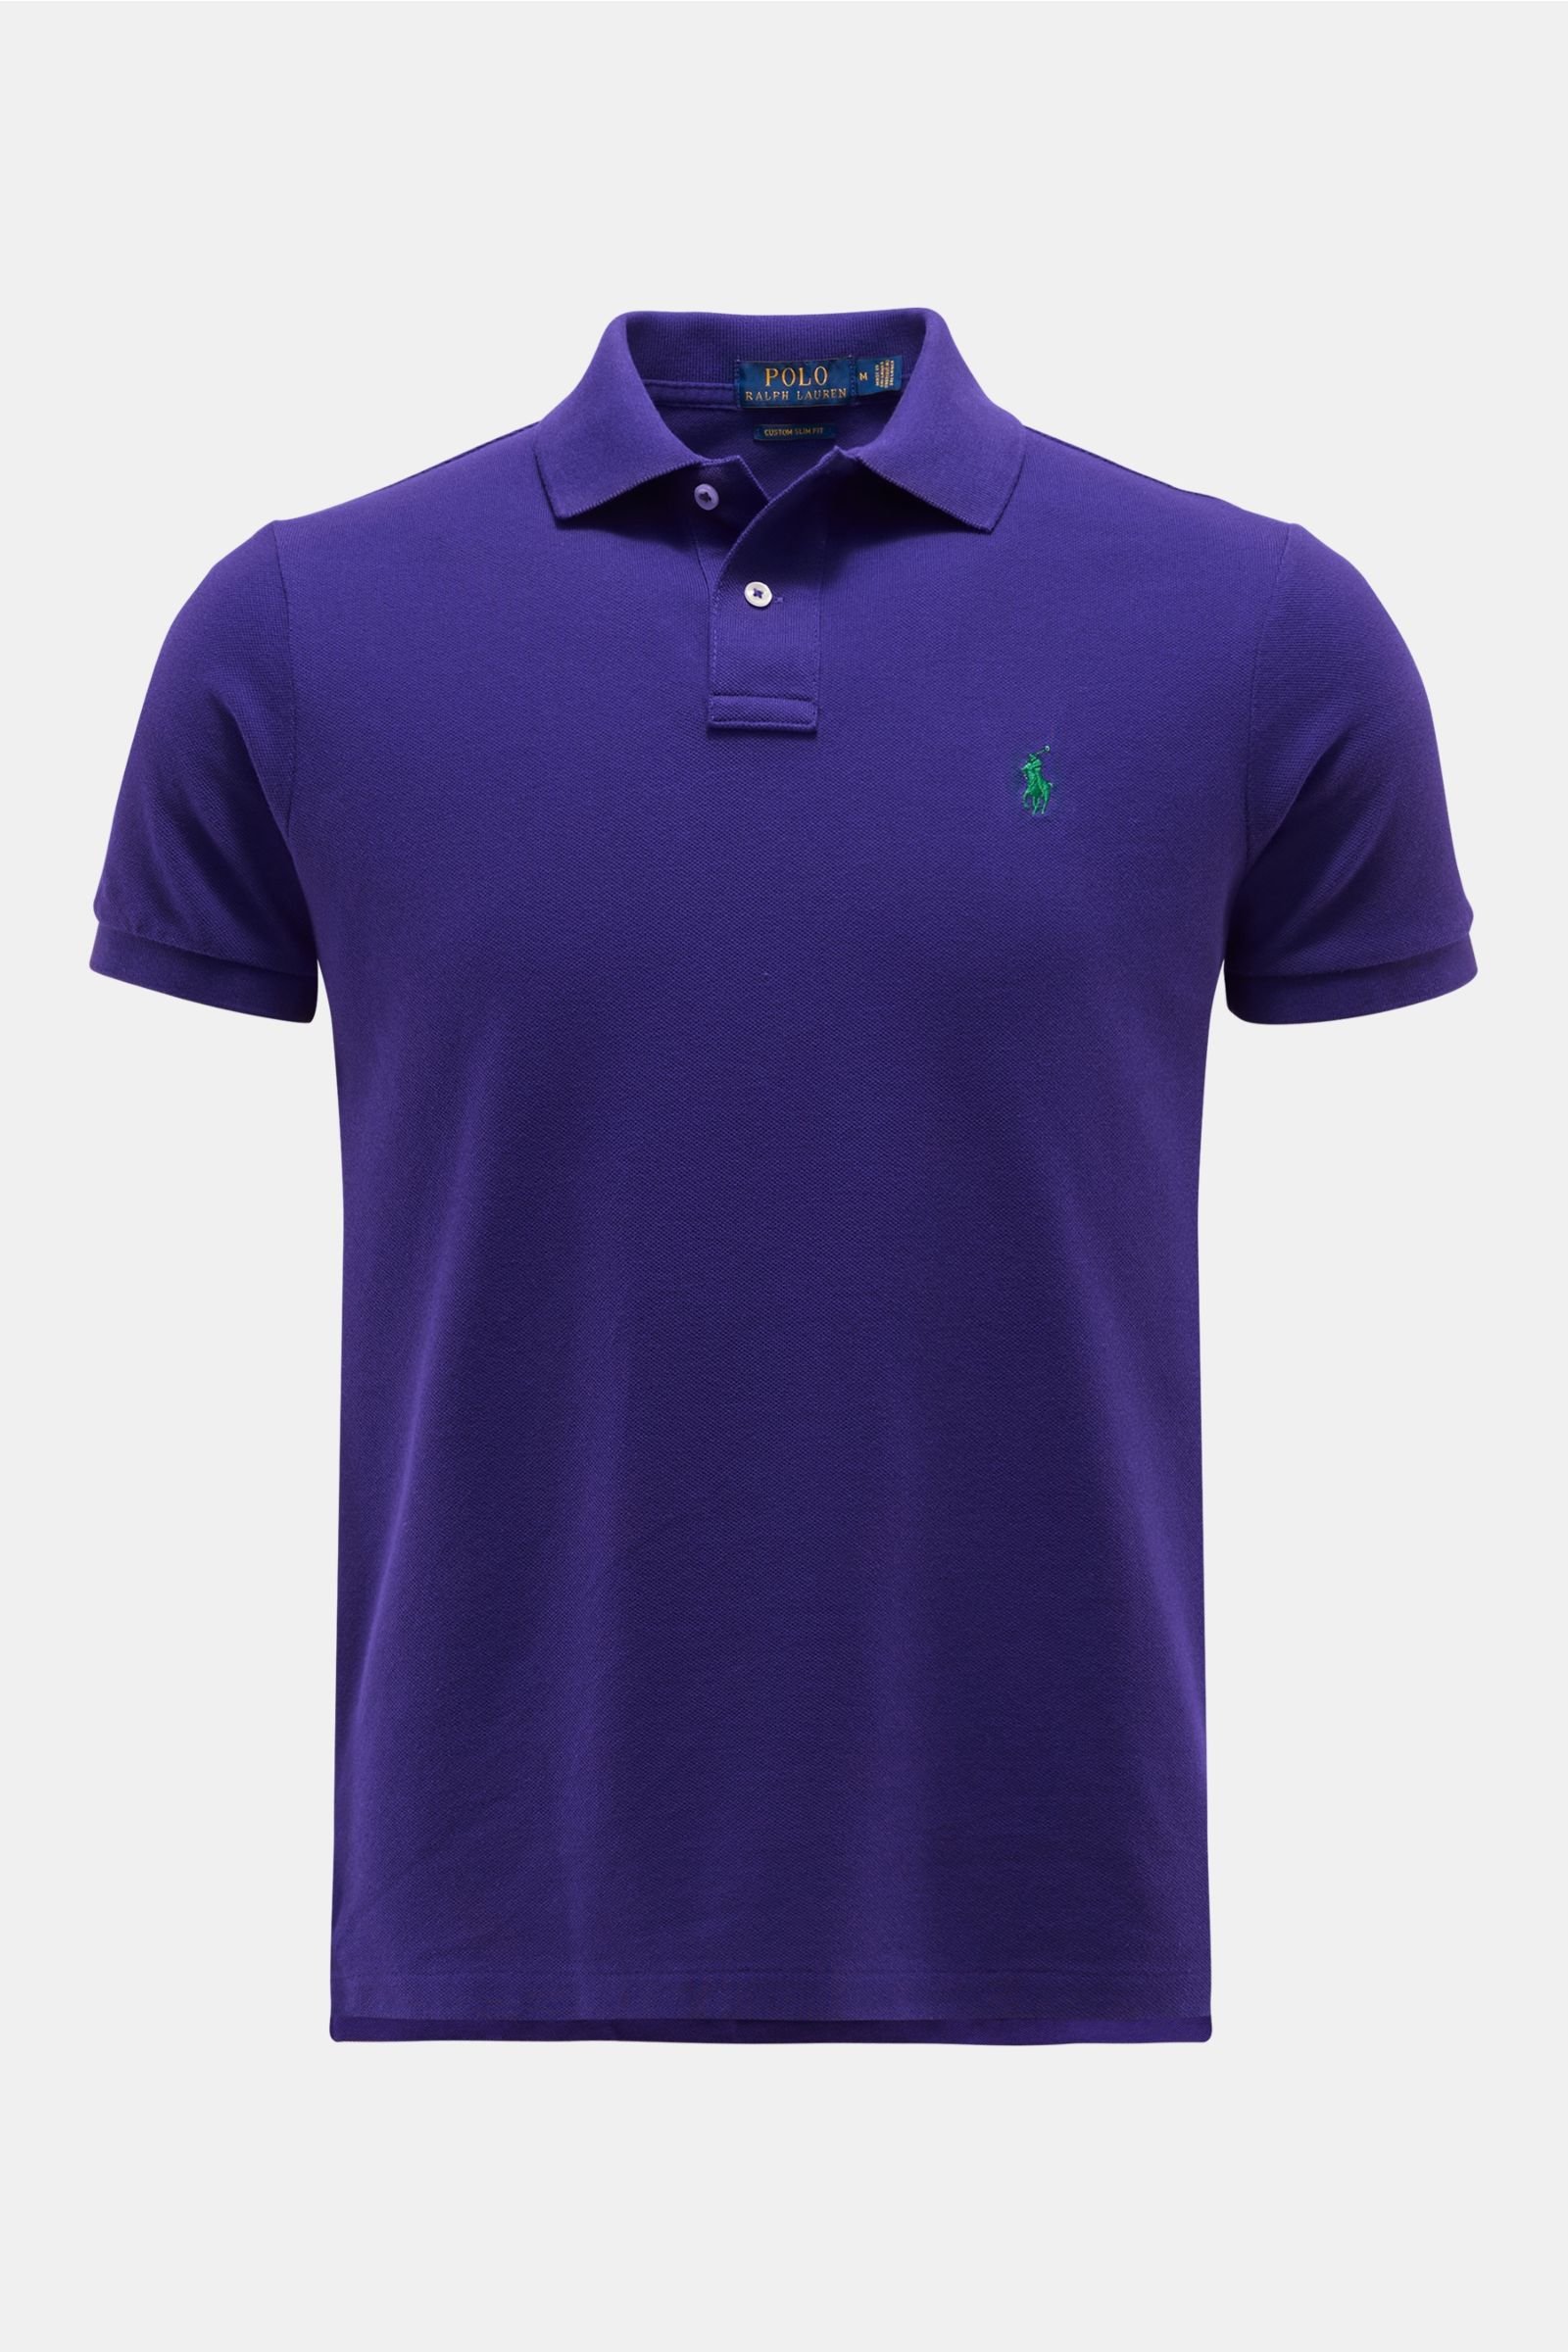 Polo shirt purple